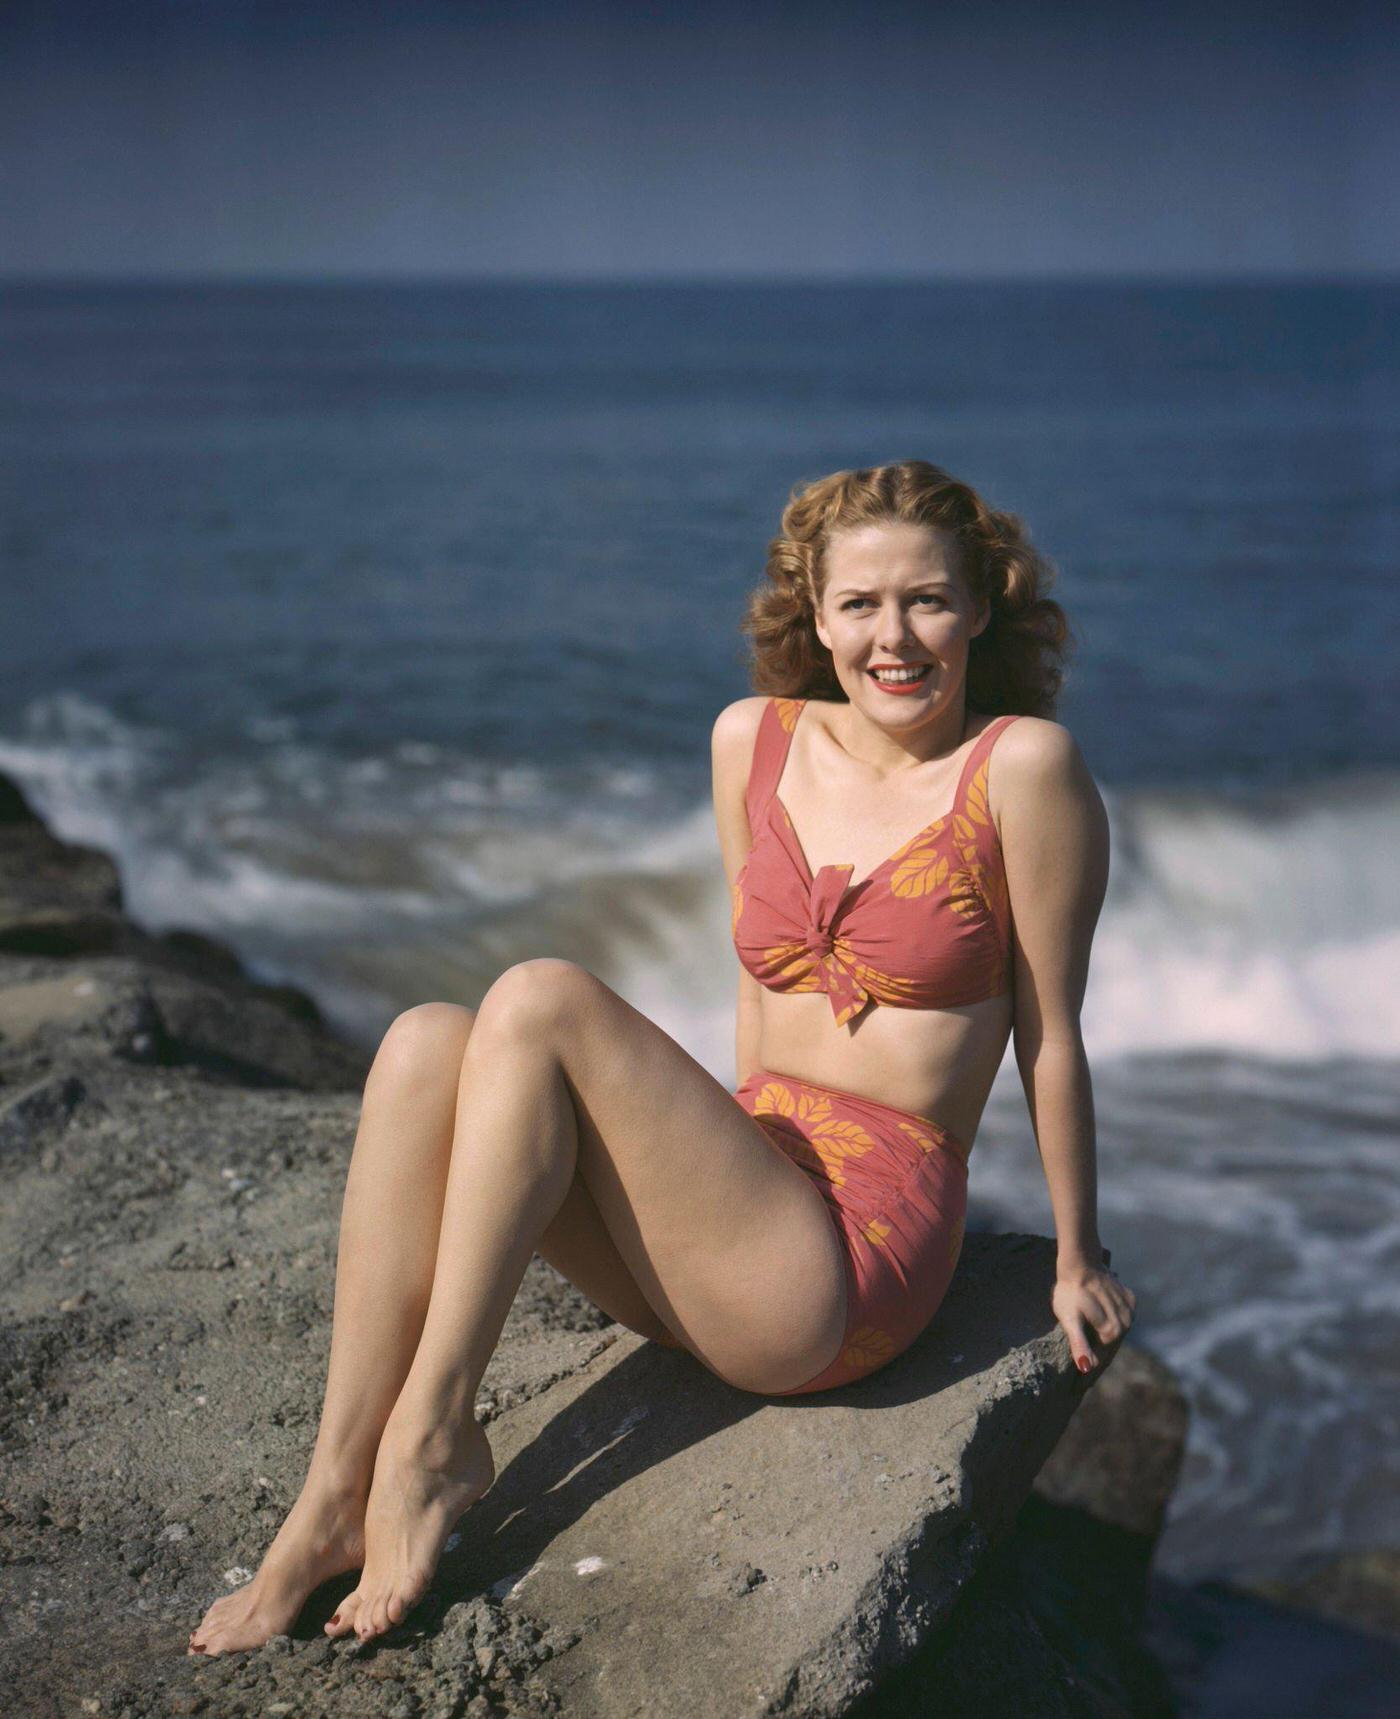 Janis Carter wearing a bikini on the beach, 1945.